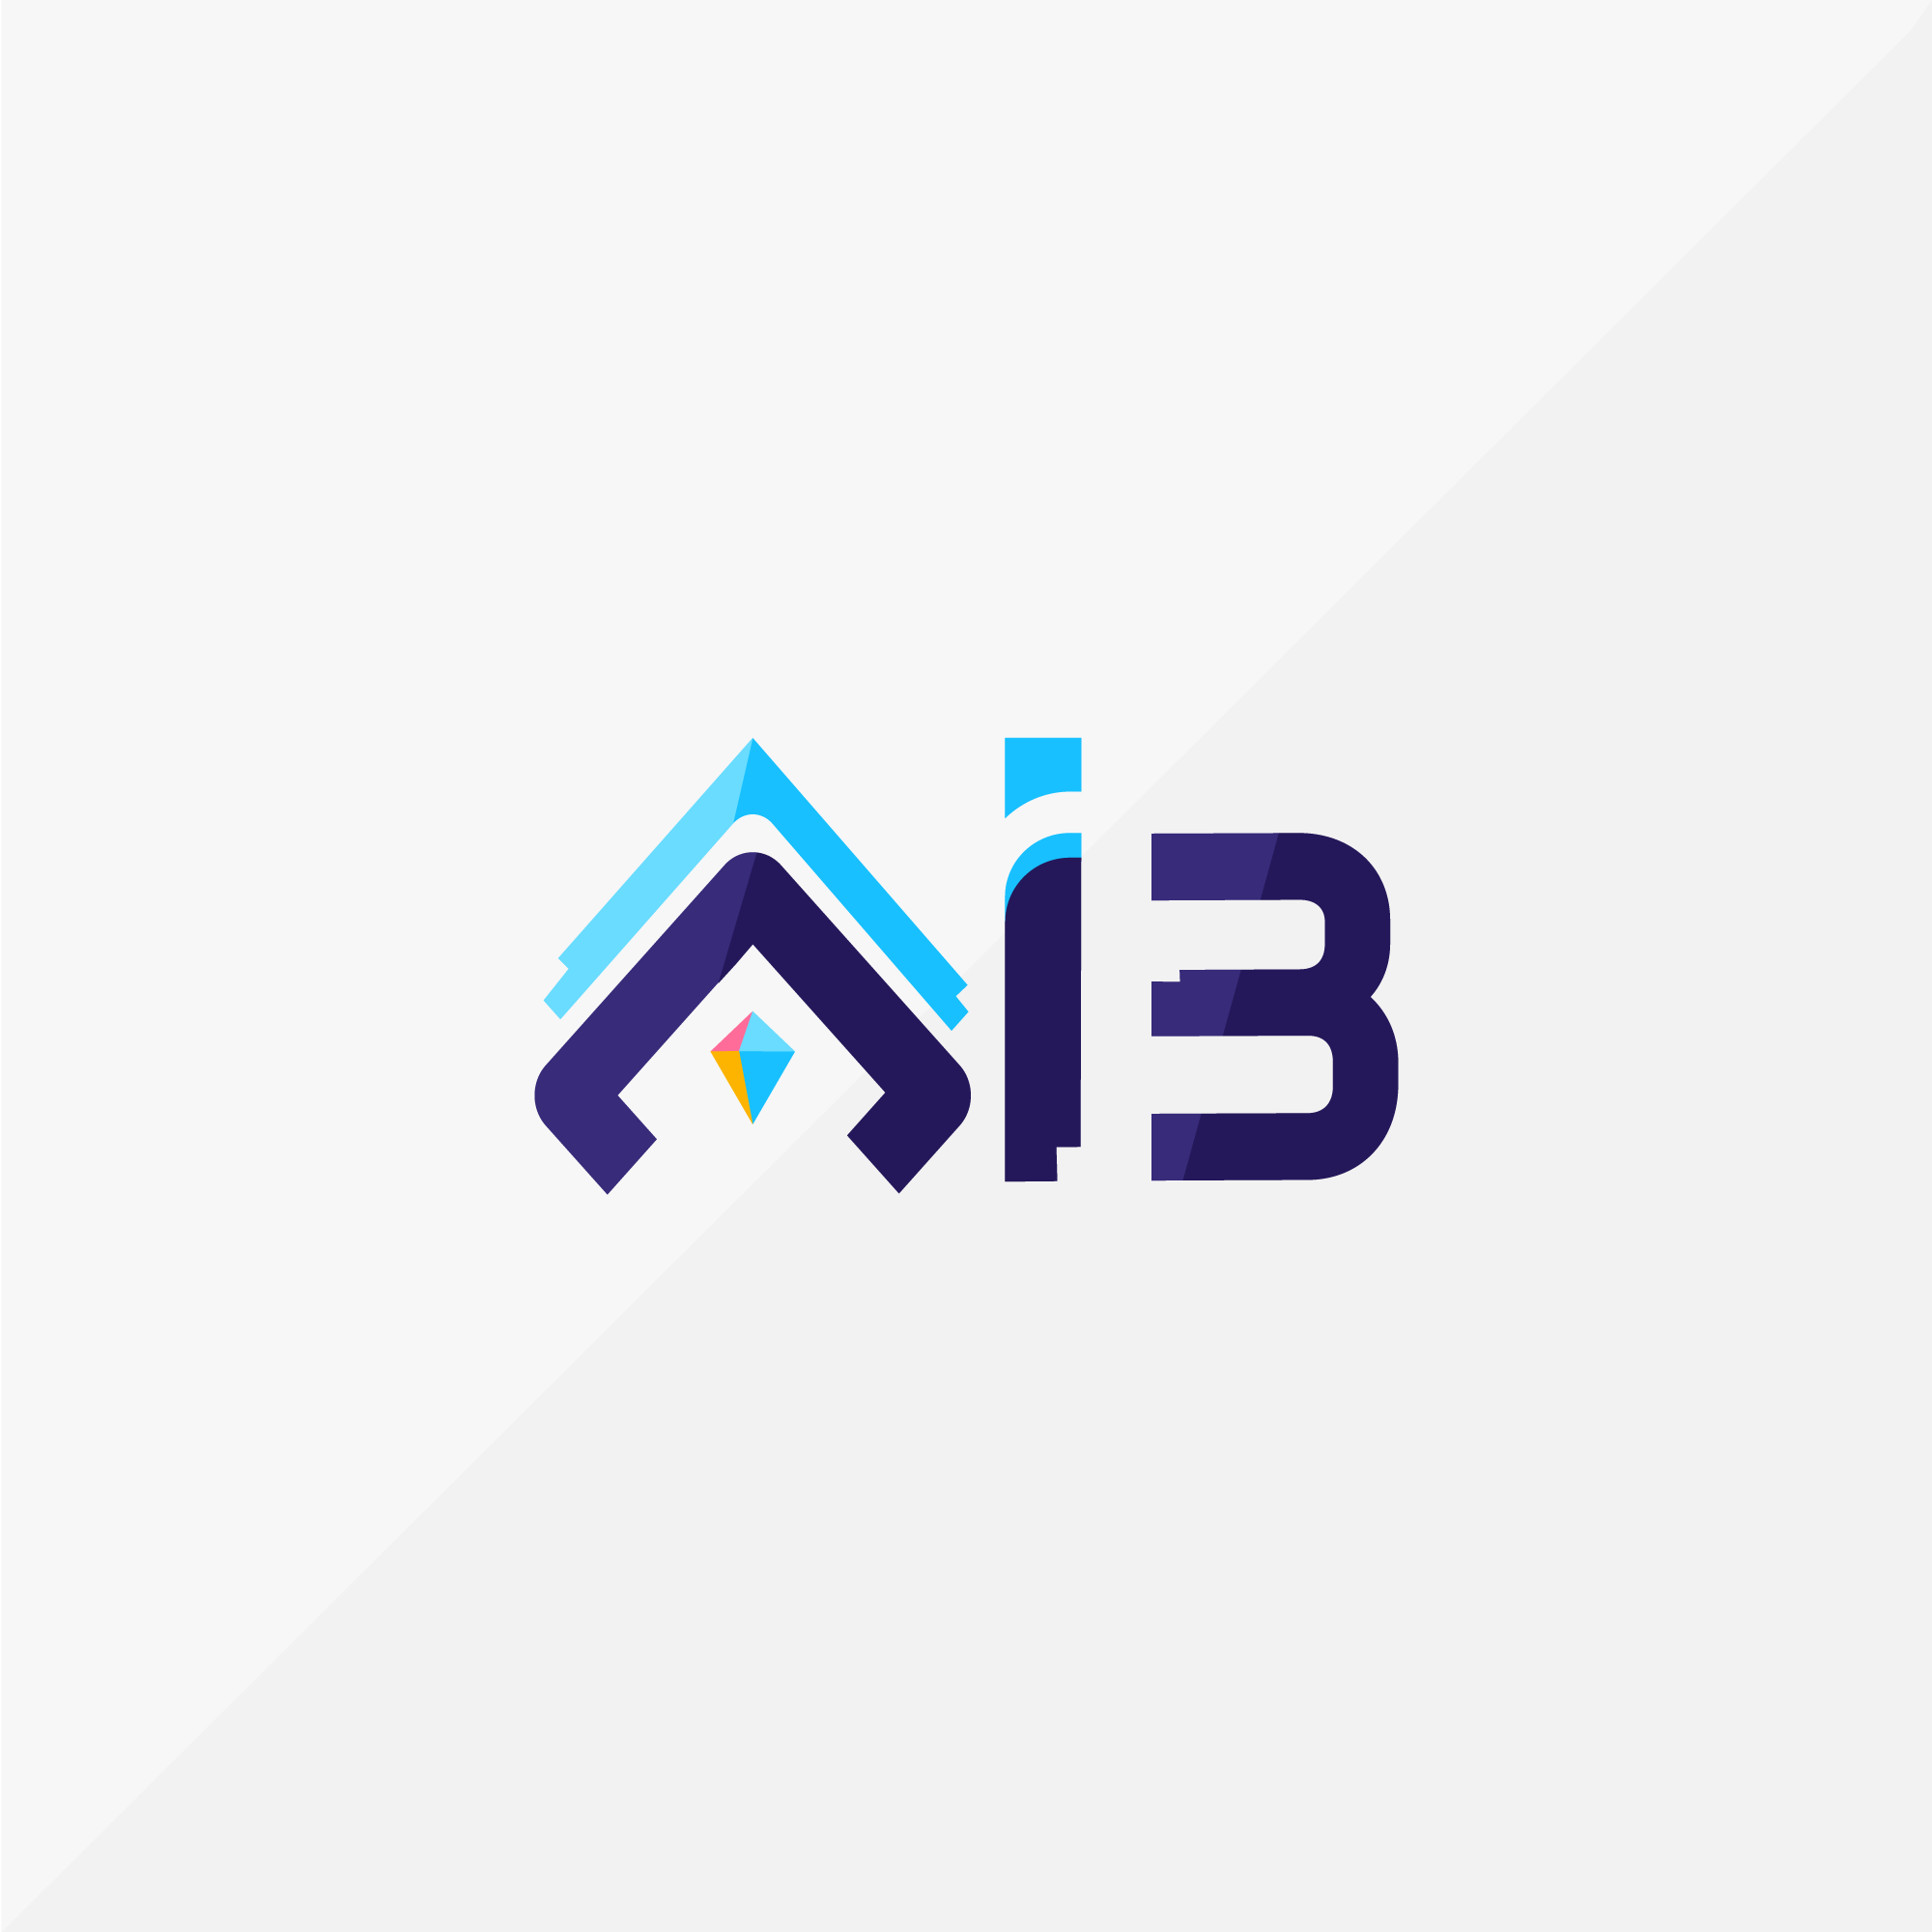 Asociația AI3 logo